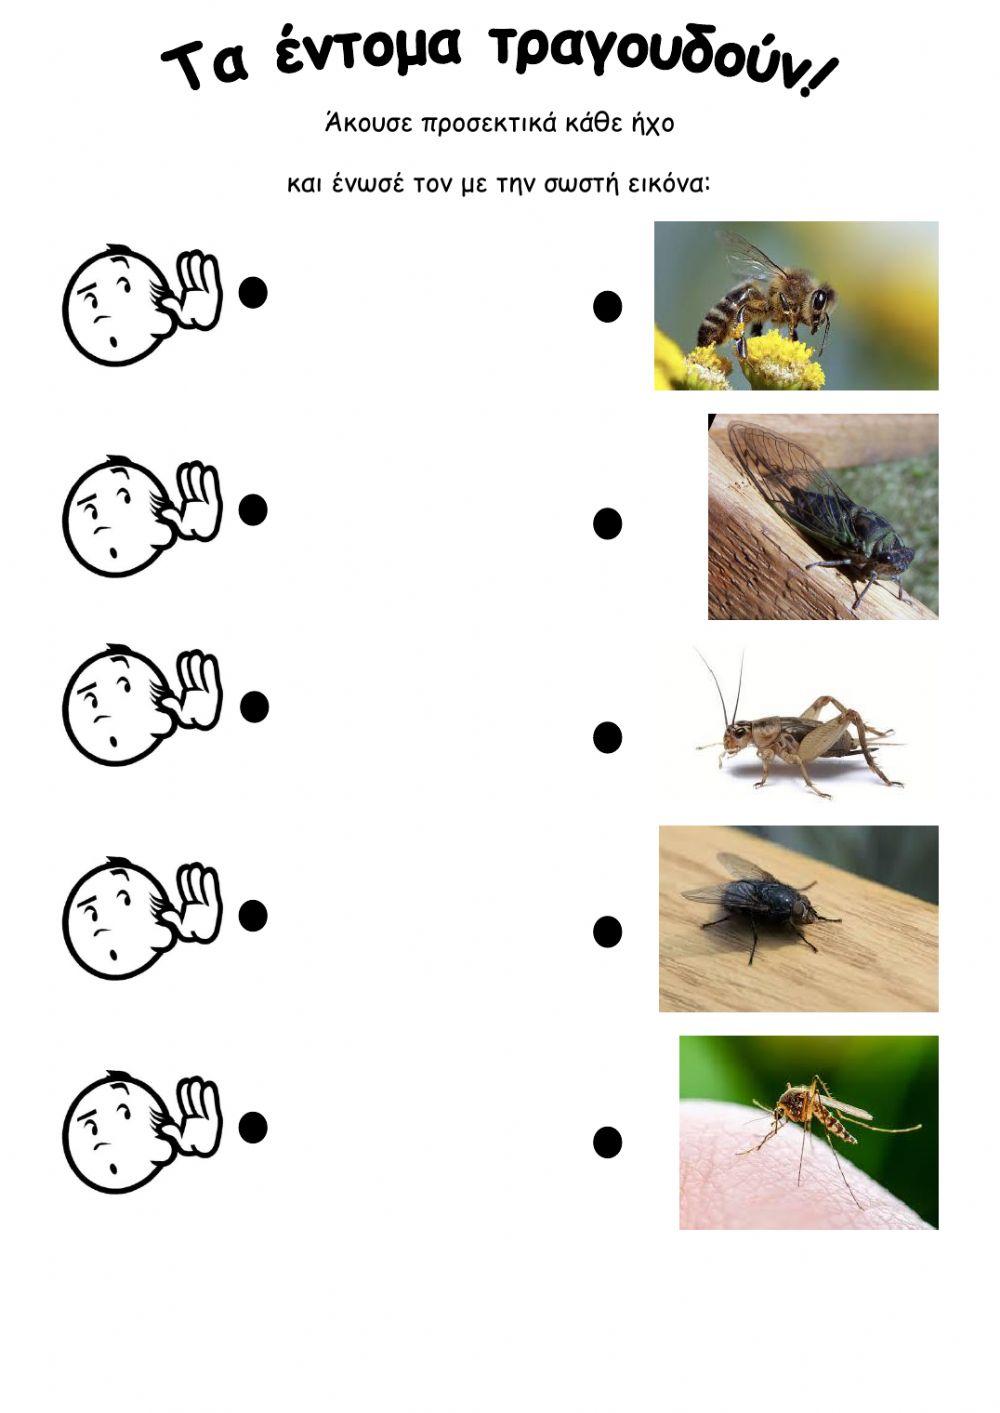 Τα έντομα τραγουδούν!!!